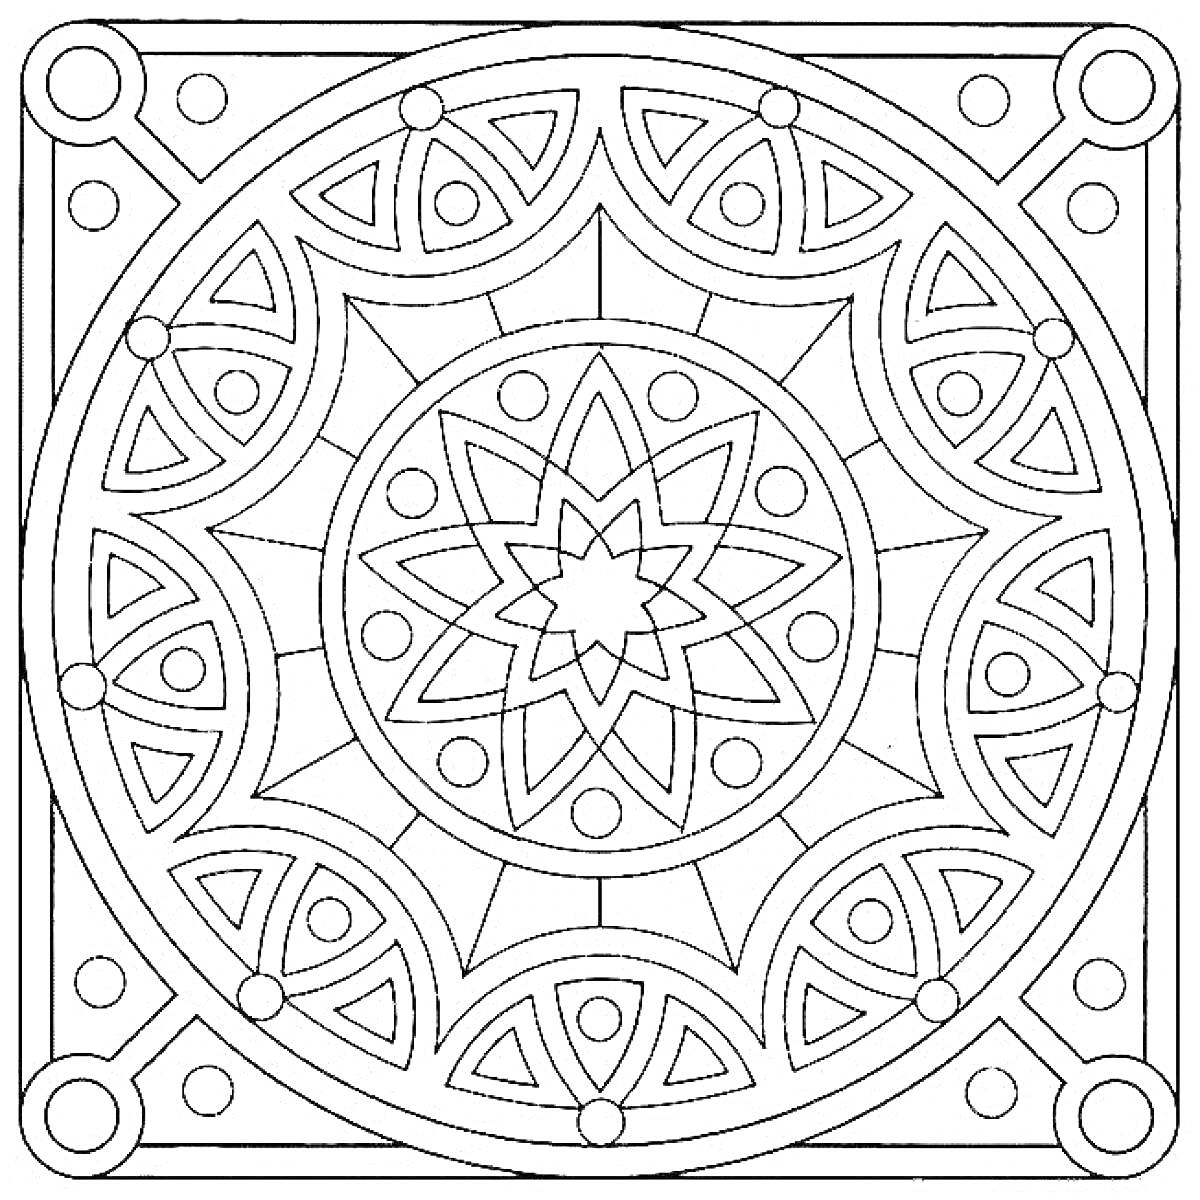 Раскраска Мандала с геометрическими узорами, кругами и лепестками в квадратной рамке